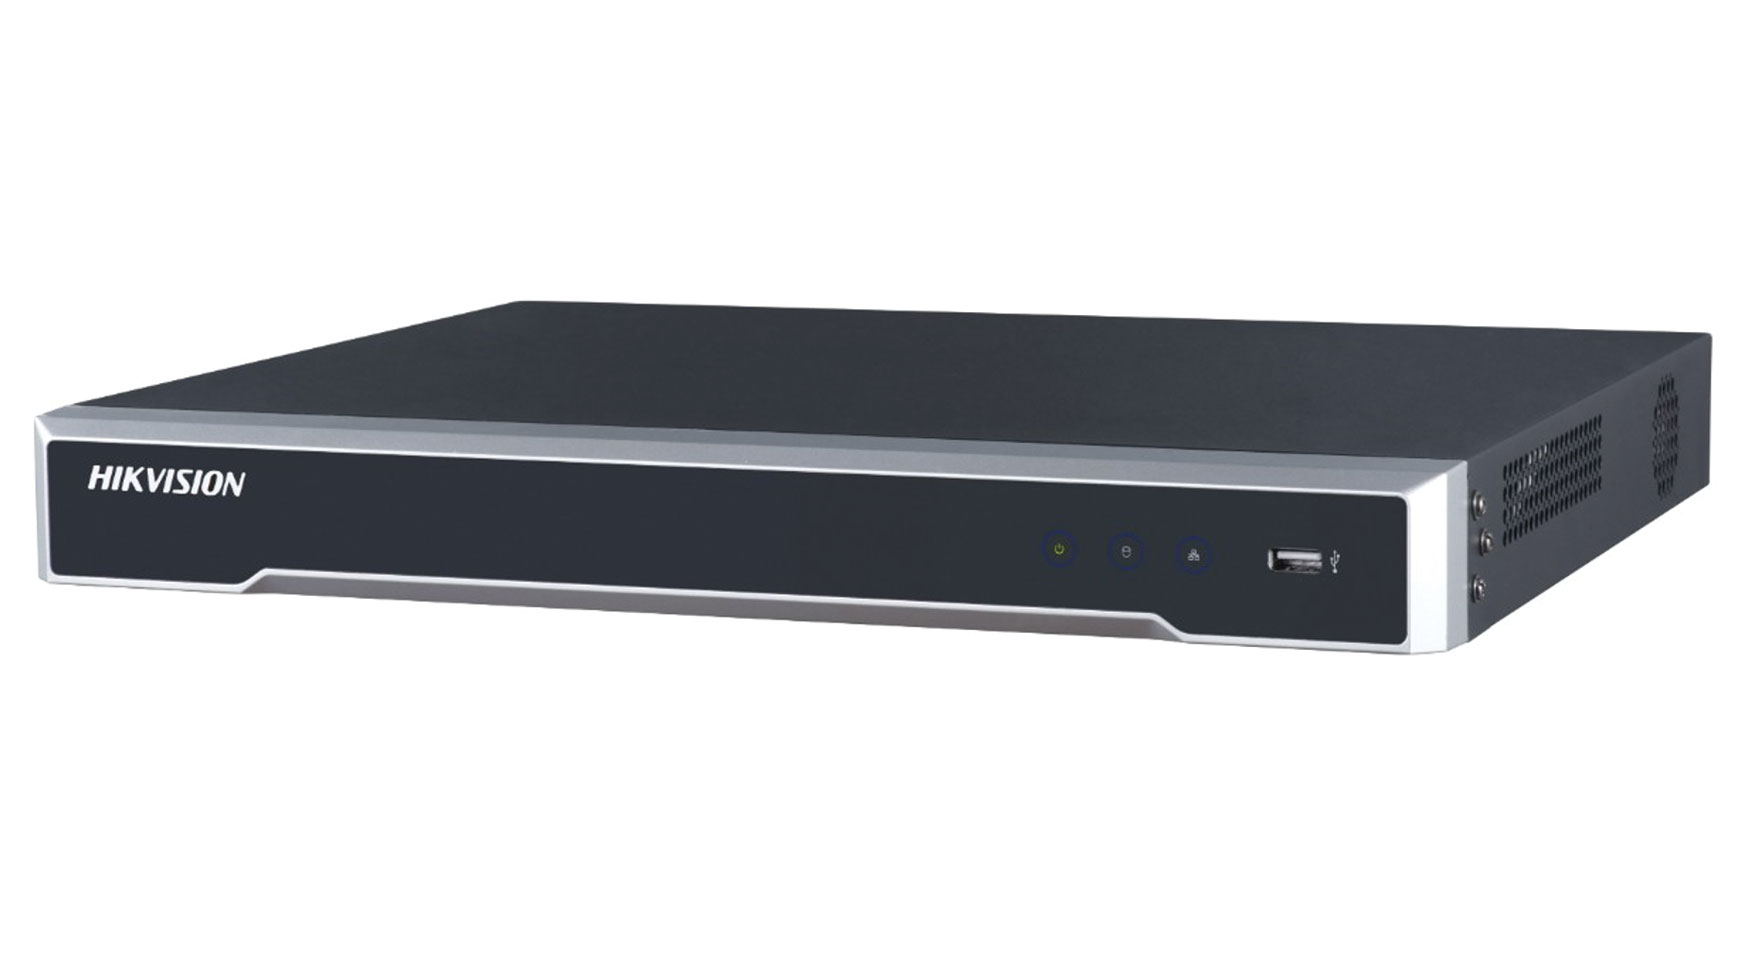 Hikvision DS-7608NI-I2/8P - Mrežni video snimač sa 8 kanala i 8 PoE portova.